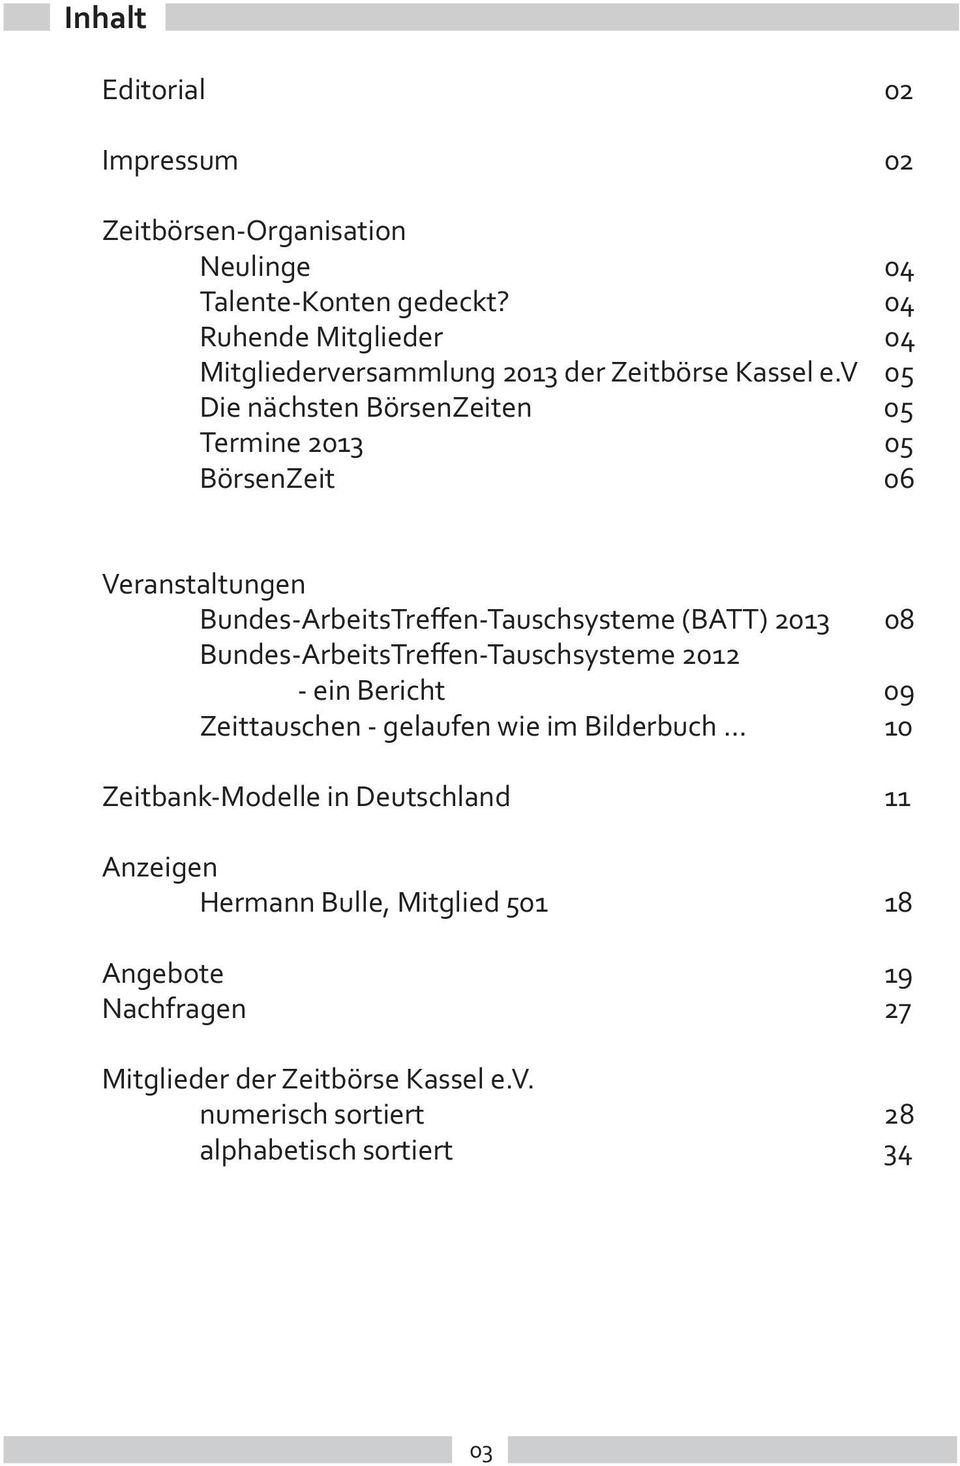 BATT Bundes ArbeitsTre en Tauschsysteme ein Bericht Zeittauschen gelaufen wie im Bilderbuch Zeitbank Modelle in Deutschland